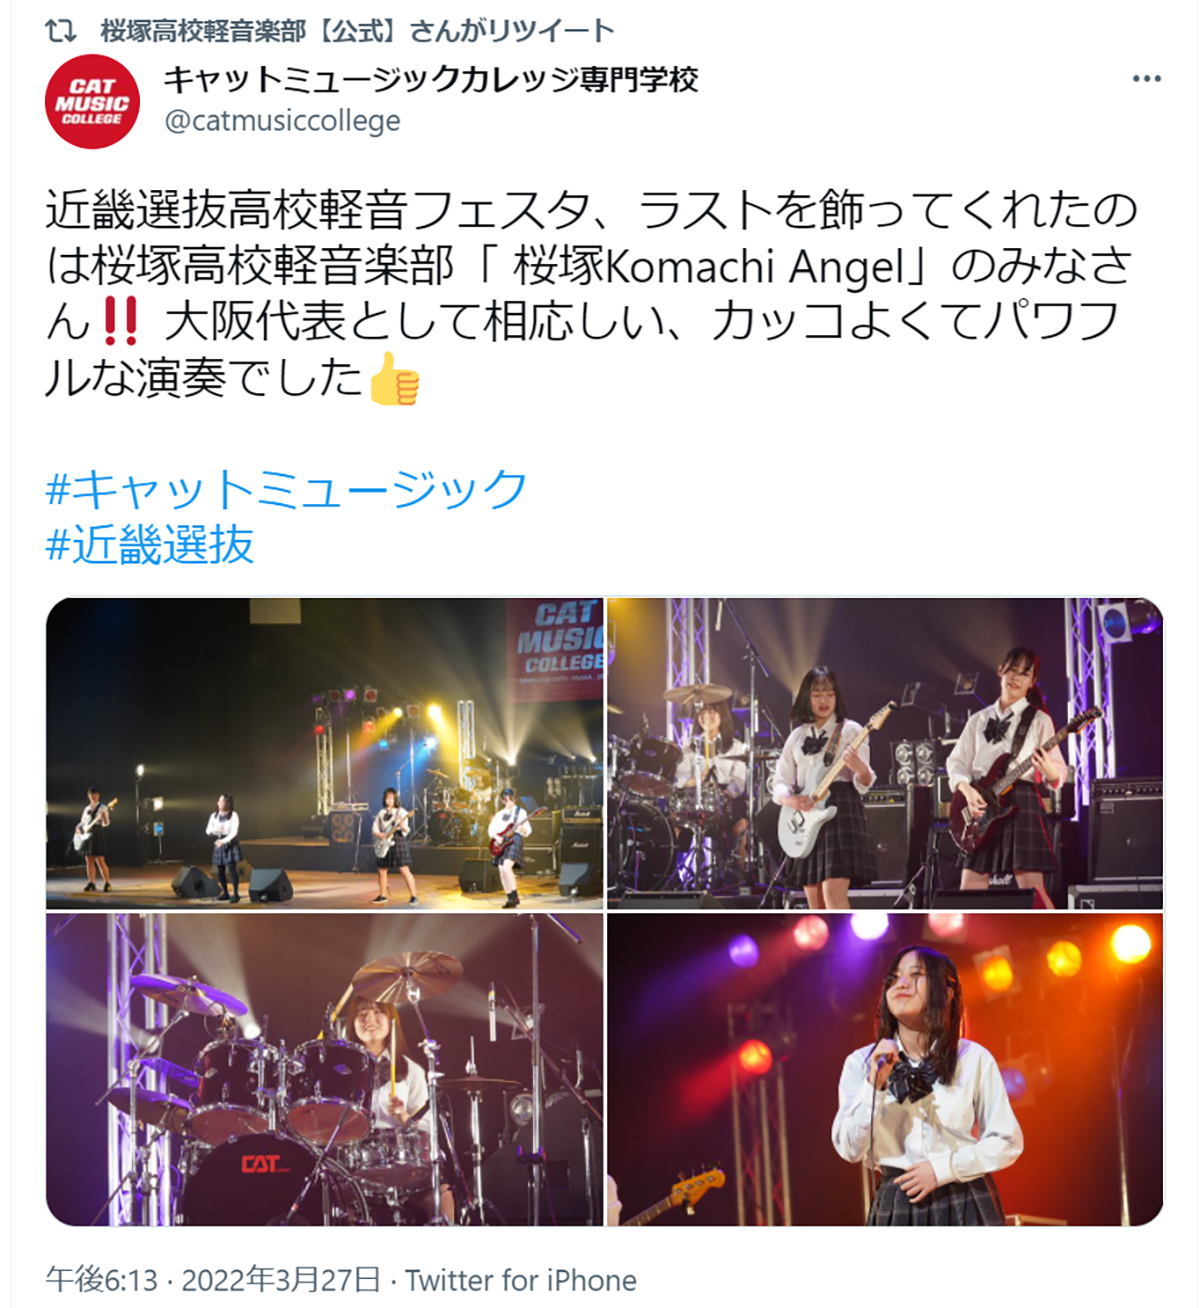 「桜塚Komachi Angel_Ⅳ」がB'z「衝動」を演奏するイメージ画像